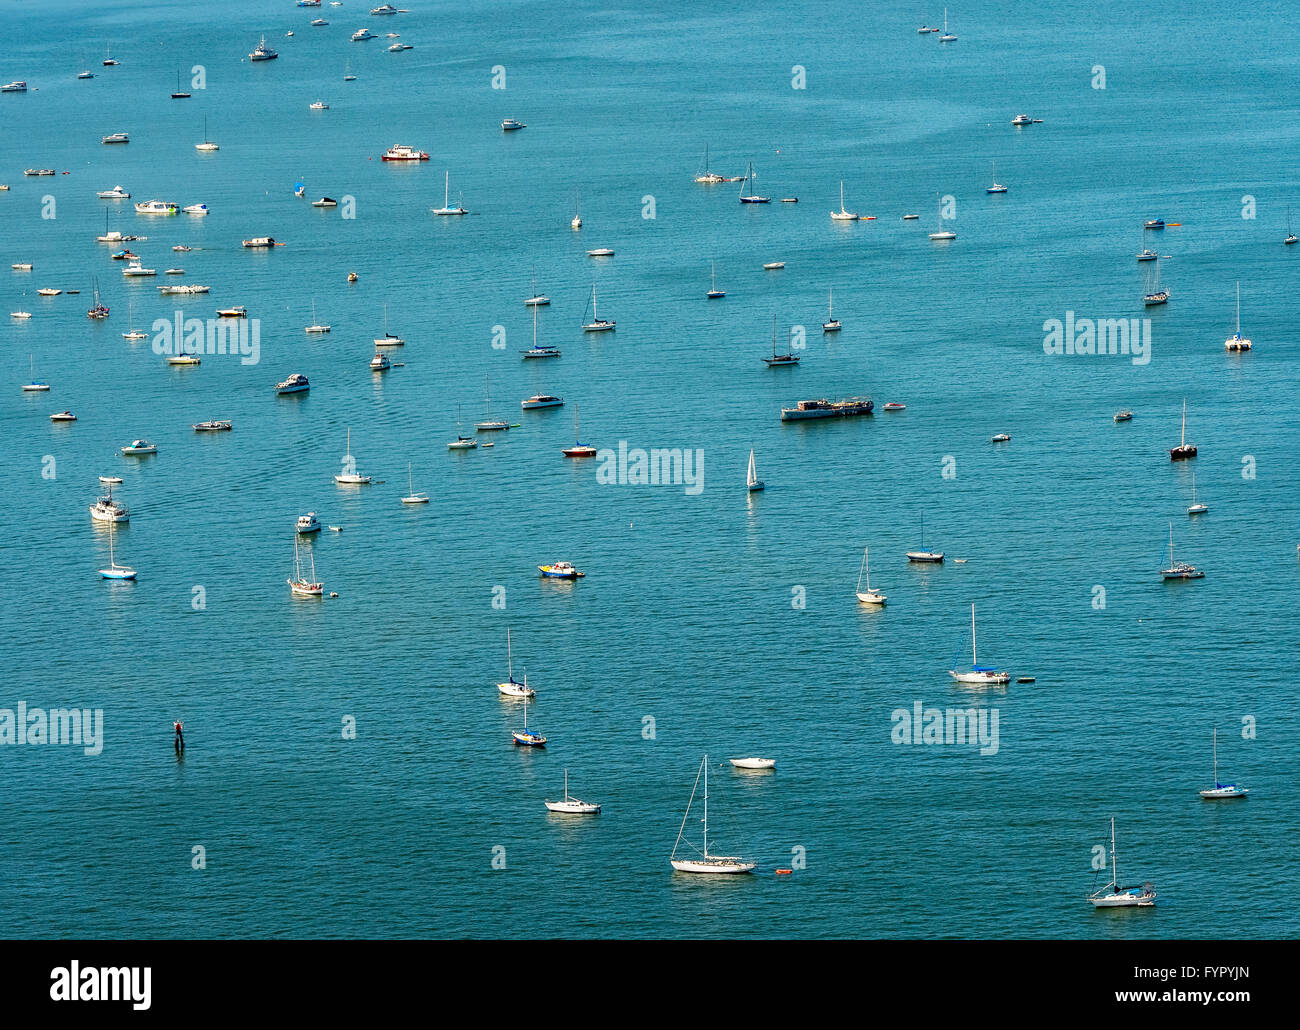 Aerial view, anchored sailboats at Sausalito, San Francisco Bay Area, California, USA Stock Photo